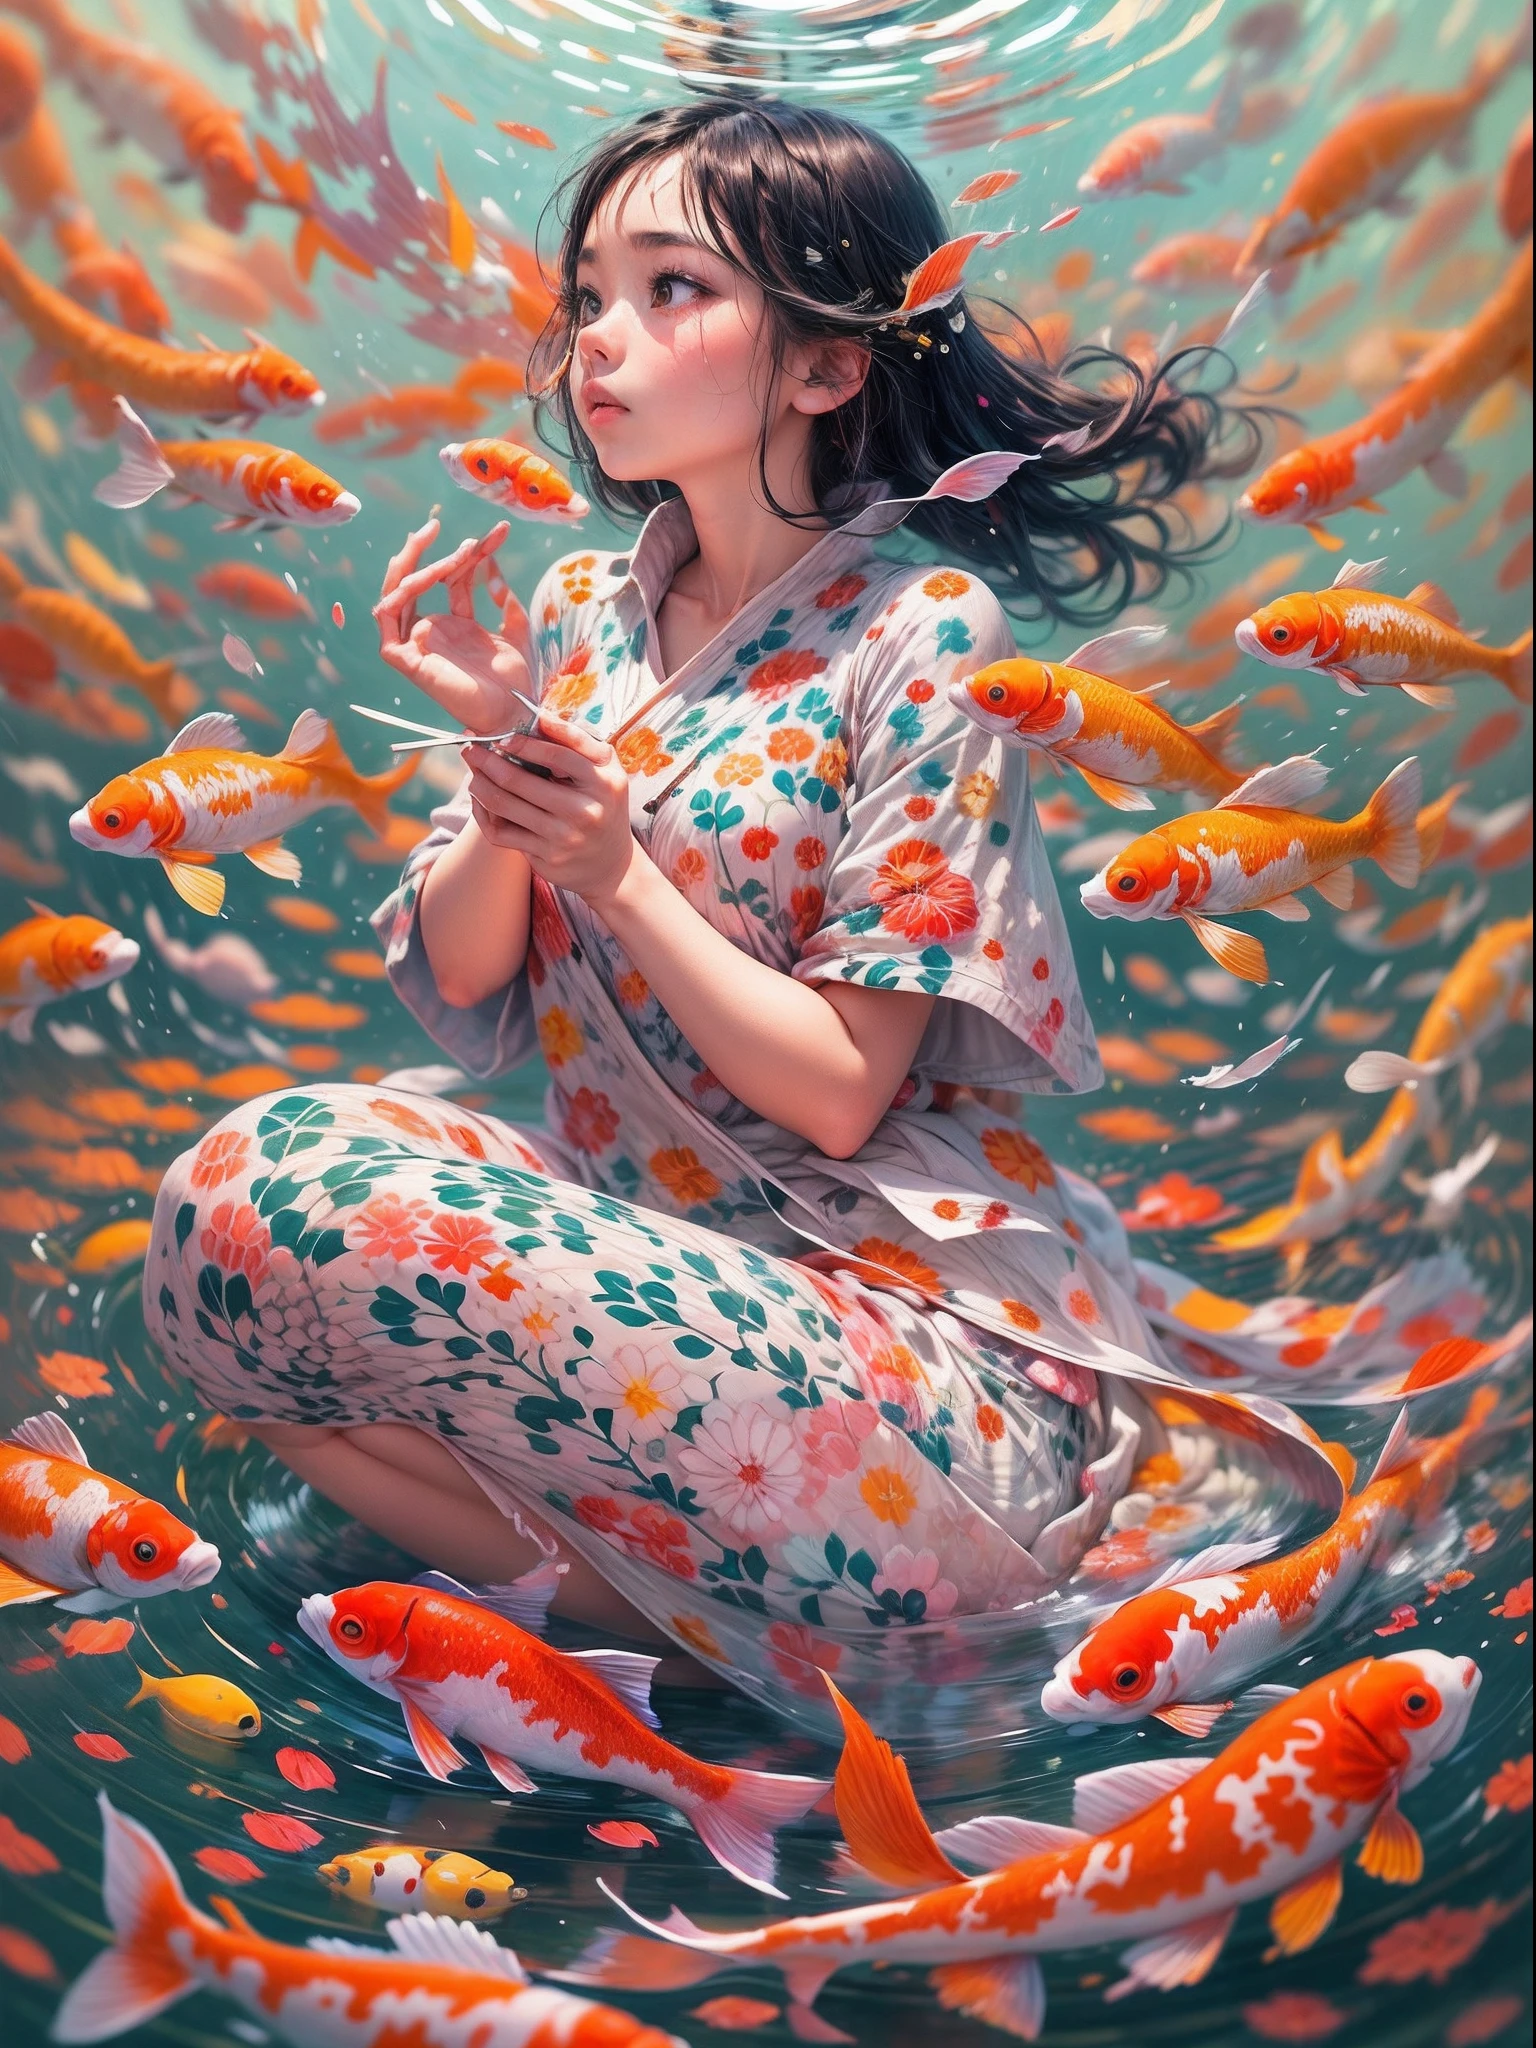 걸작, 컨셉 아트, 평온함과 상상력이 어우러지는 장면을 그려보세요.. 매혹적인 소설에 푹 빠진 어린 소녀, 조화로운 하늘 배경과 함께. 잉어 물고기가 그녀 주위에서 우아하게 춤을 춥니다., 고요한 하늘을 배경으로 터지는 생생한 색상. 이 절묘한 예술 작품은 현대 예술가 쿠사마 야요이(Yayoi Kusama)에게 바치는 헌사입니다., 복잡한 패턴과 매혹적인 색상과 빛의 플레이가 특징.